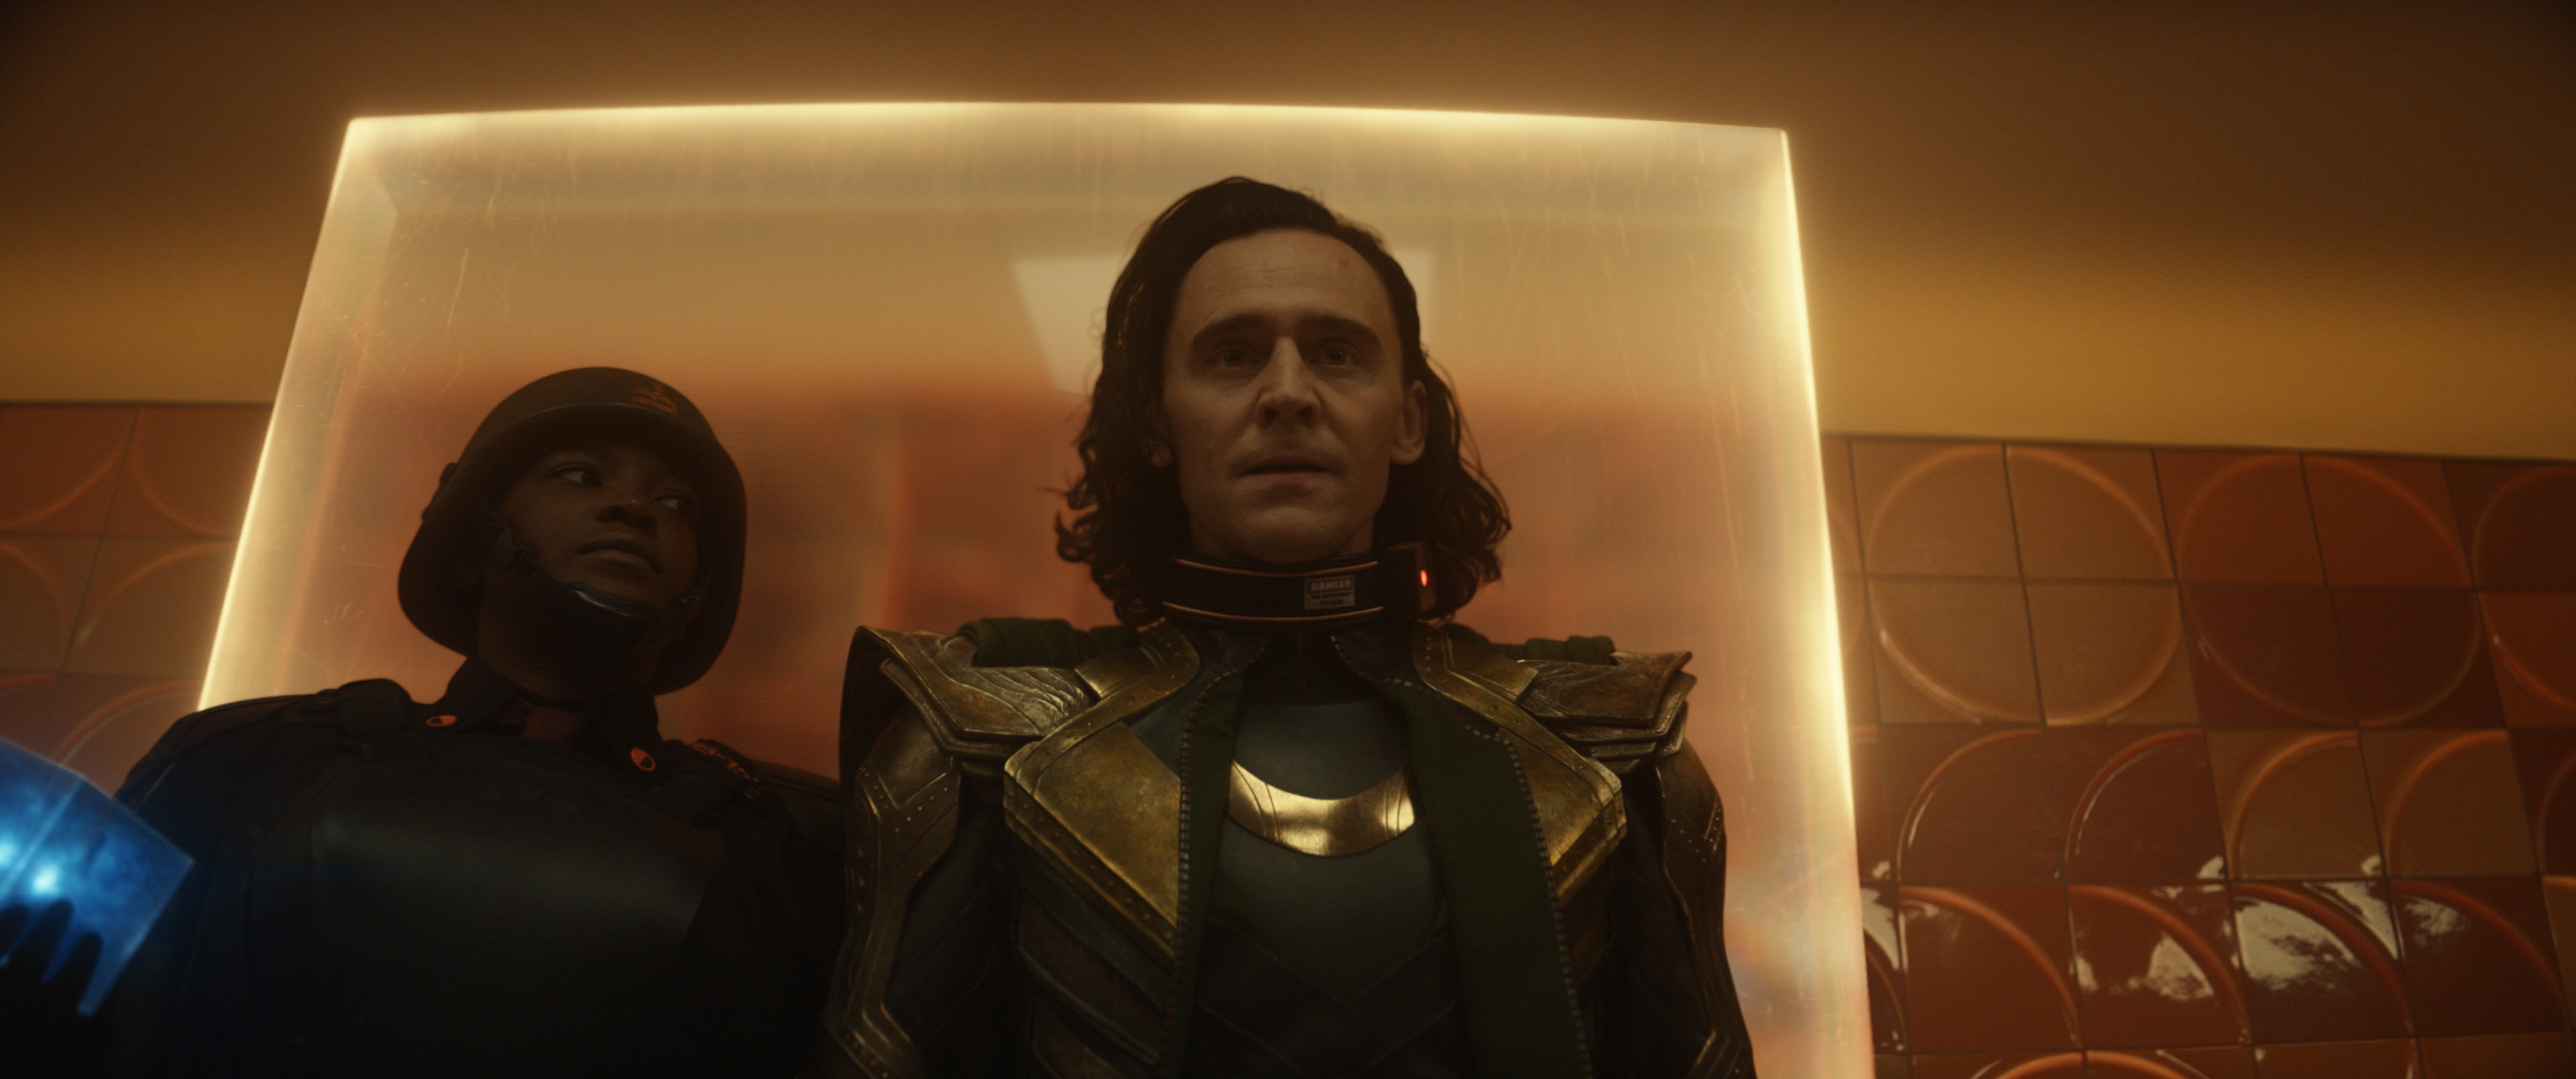 Ο σκηνοθέτης Loki θέλει να σκέφτεστε τα Χριστούγεννα ενώ παρακολουθείτε την παράσταση